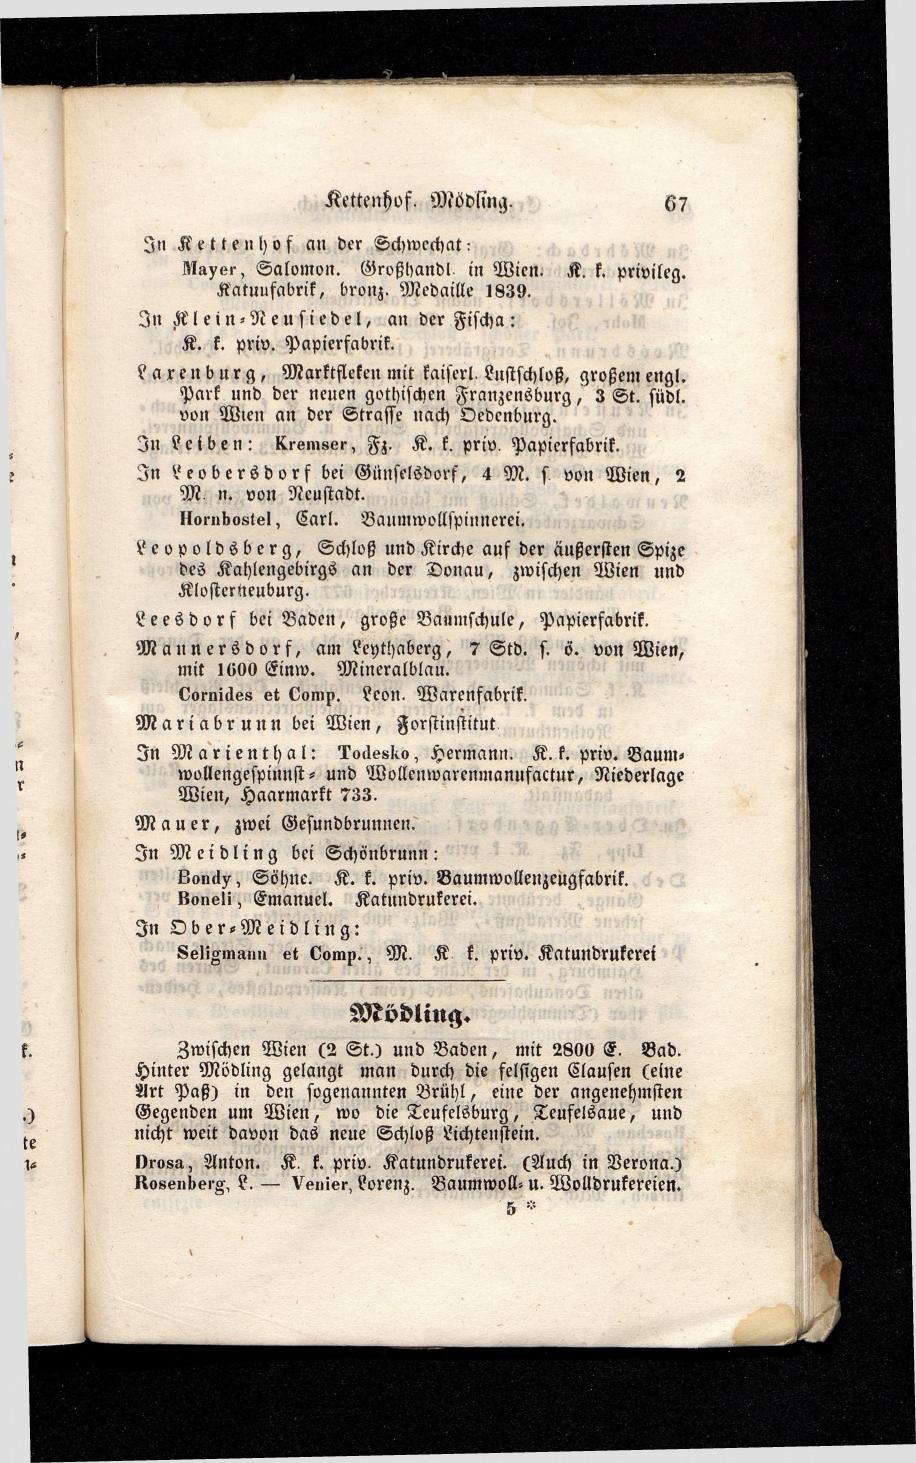 Grosses Adressbuch der Kaufleute. No. 13. Oesterreich ober u. unter der Enns 1844 - Seite 71